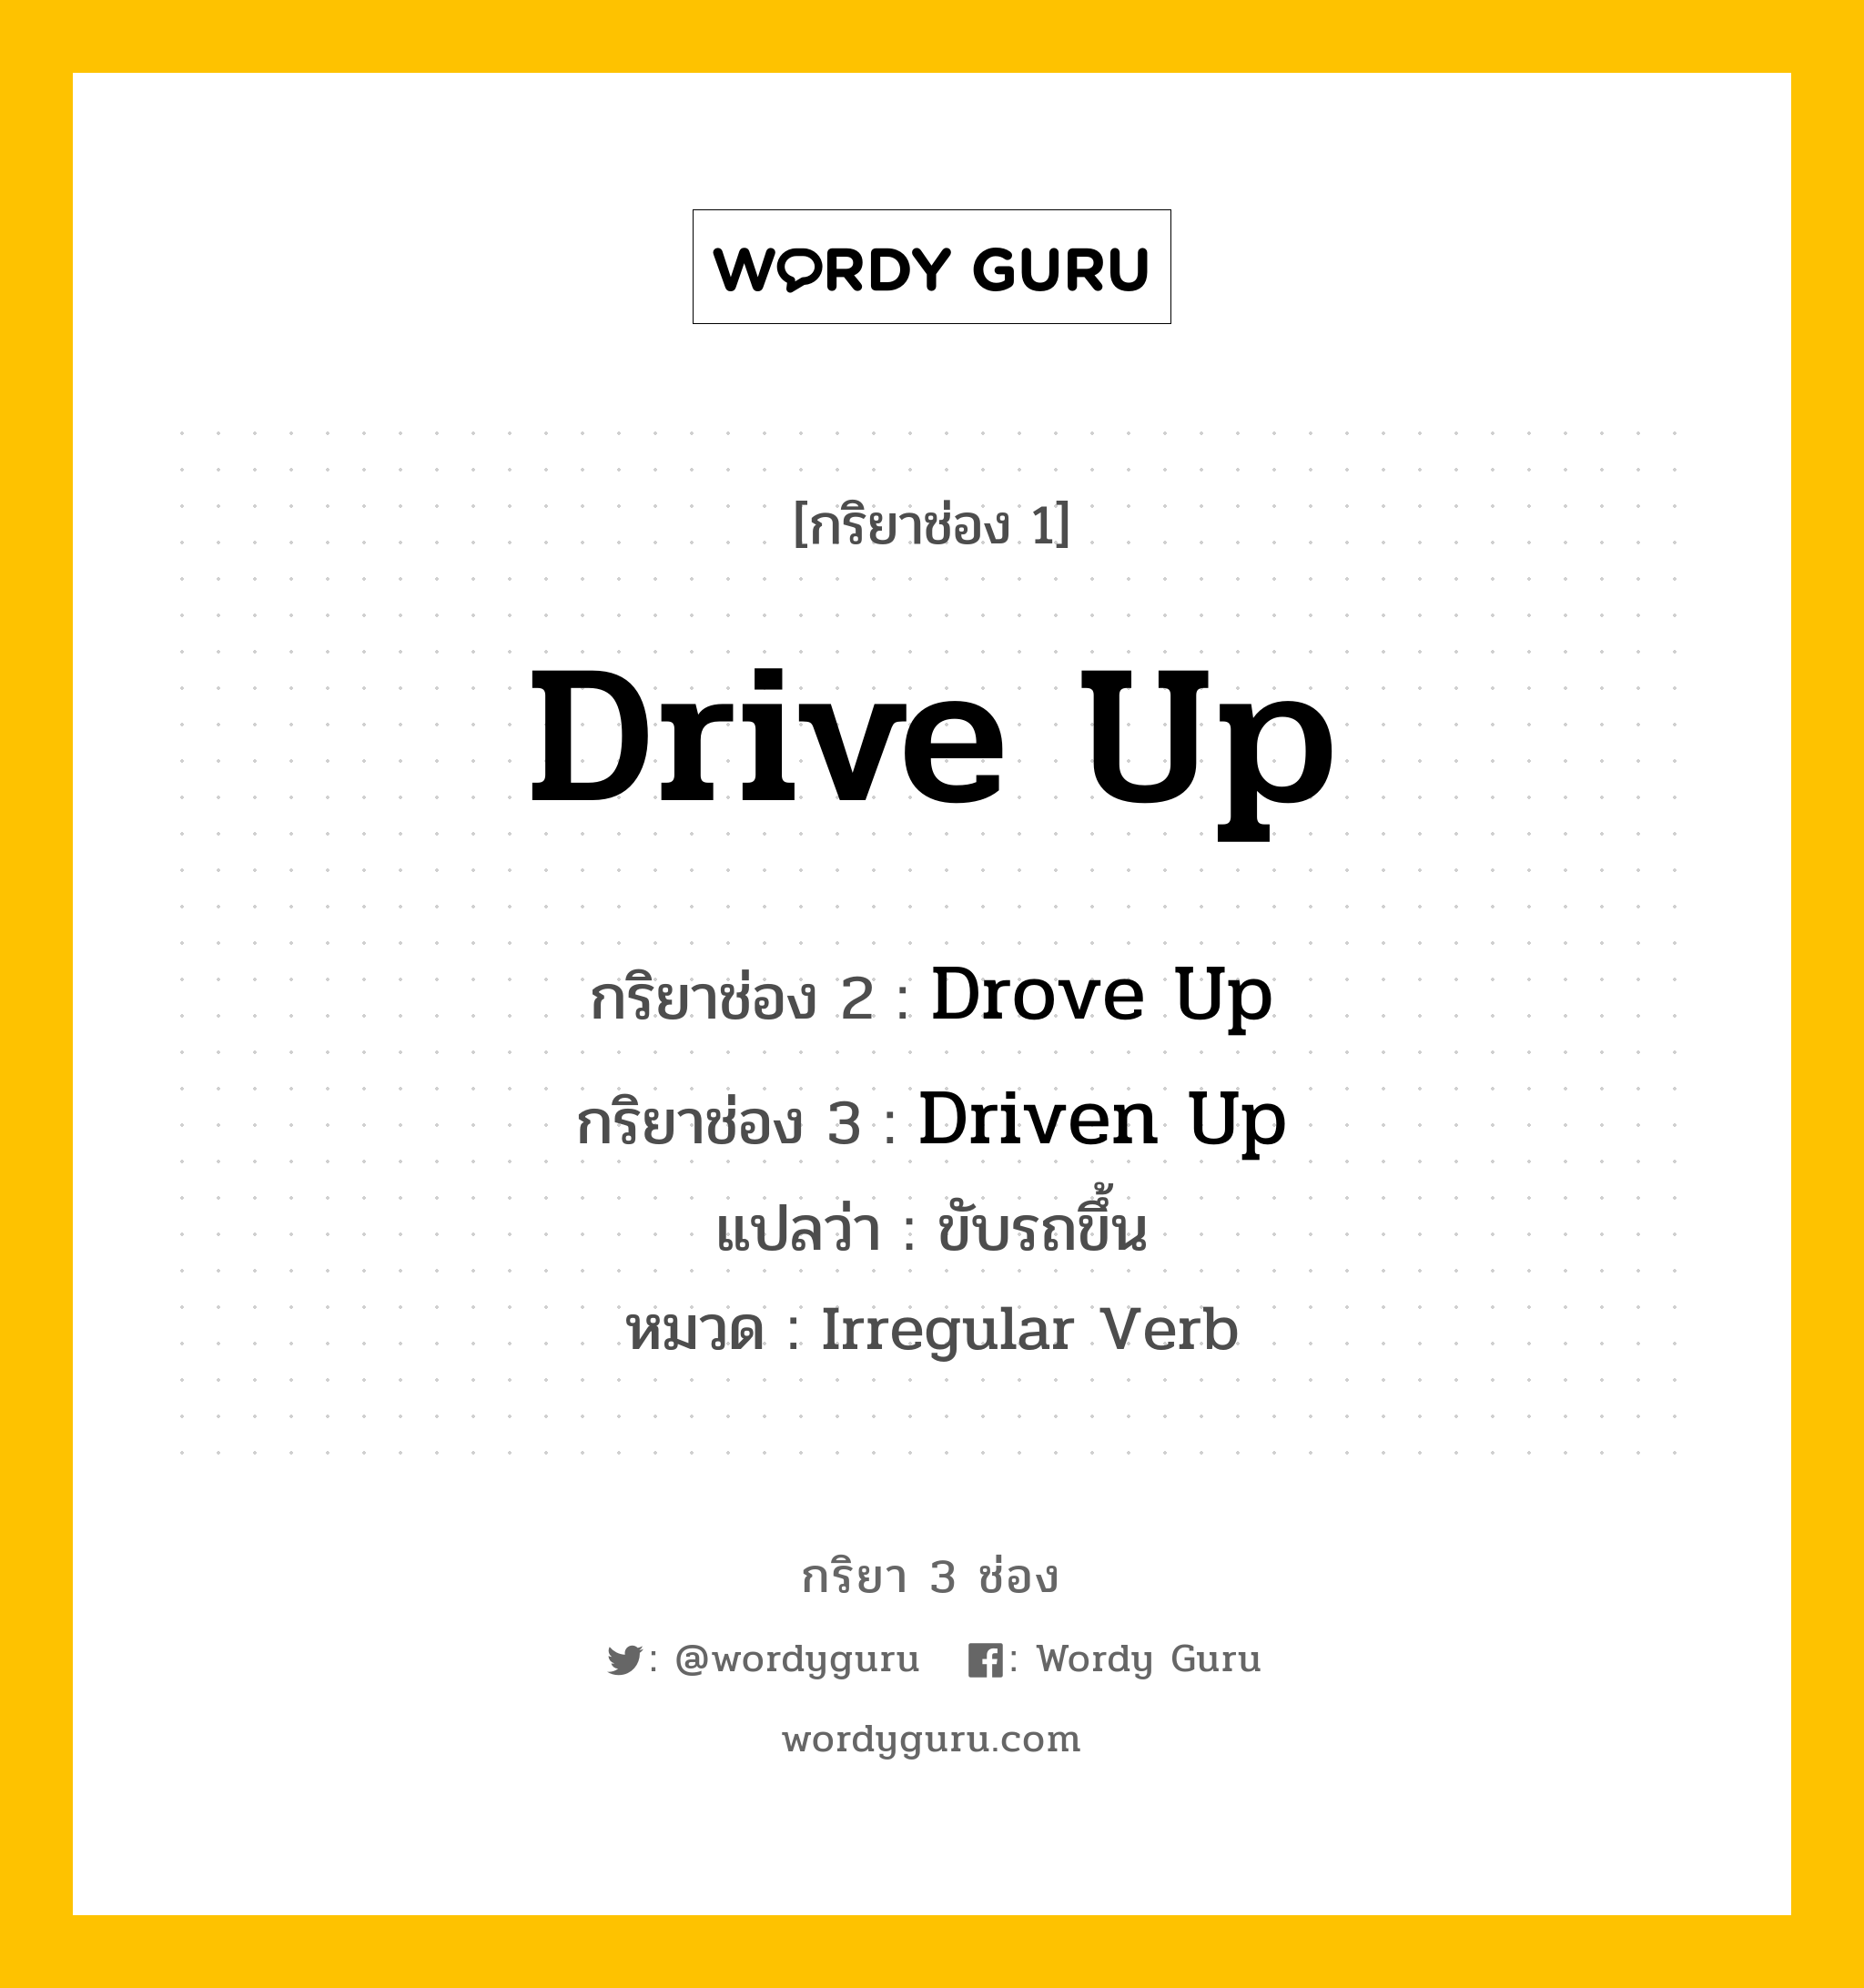 กริยา 3 ช่อง: Drive Up ช่อง 2 Drive Up ช่อง 3 คืออะไร, กริยาช่อง 1 Drive Up กริยาช่อง 2 Drove Up กริยาช่อง 3 Driven Up แปลว่า ขับรถขึ้น หมวด Irregular Verb หมวด Irregular Verb